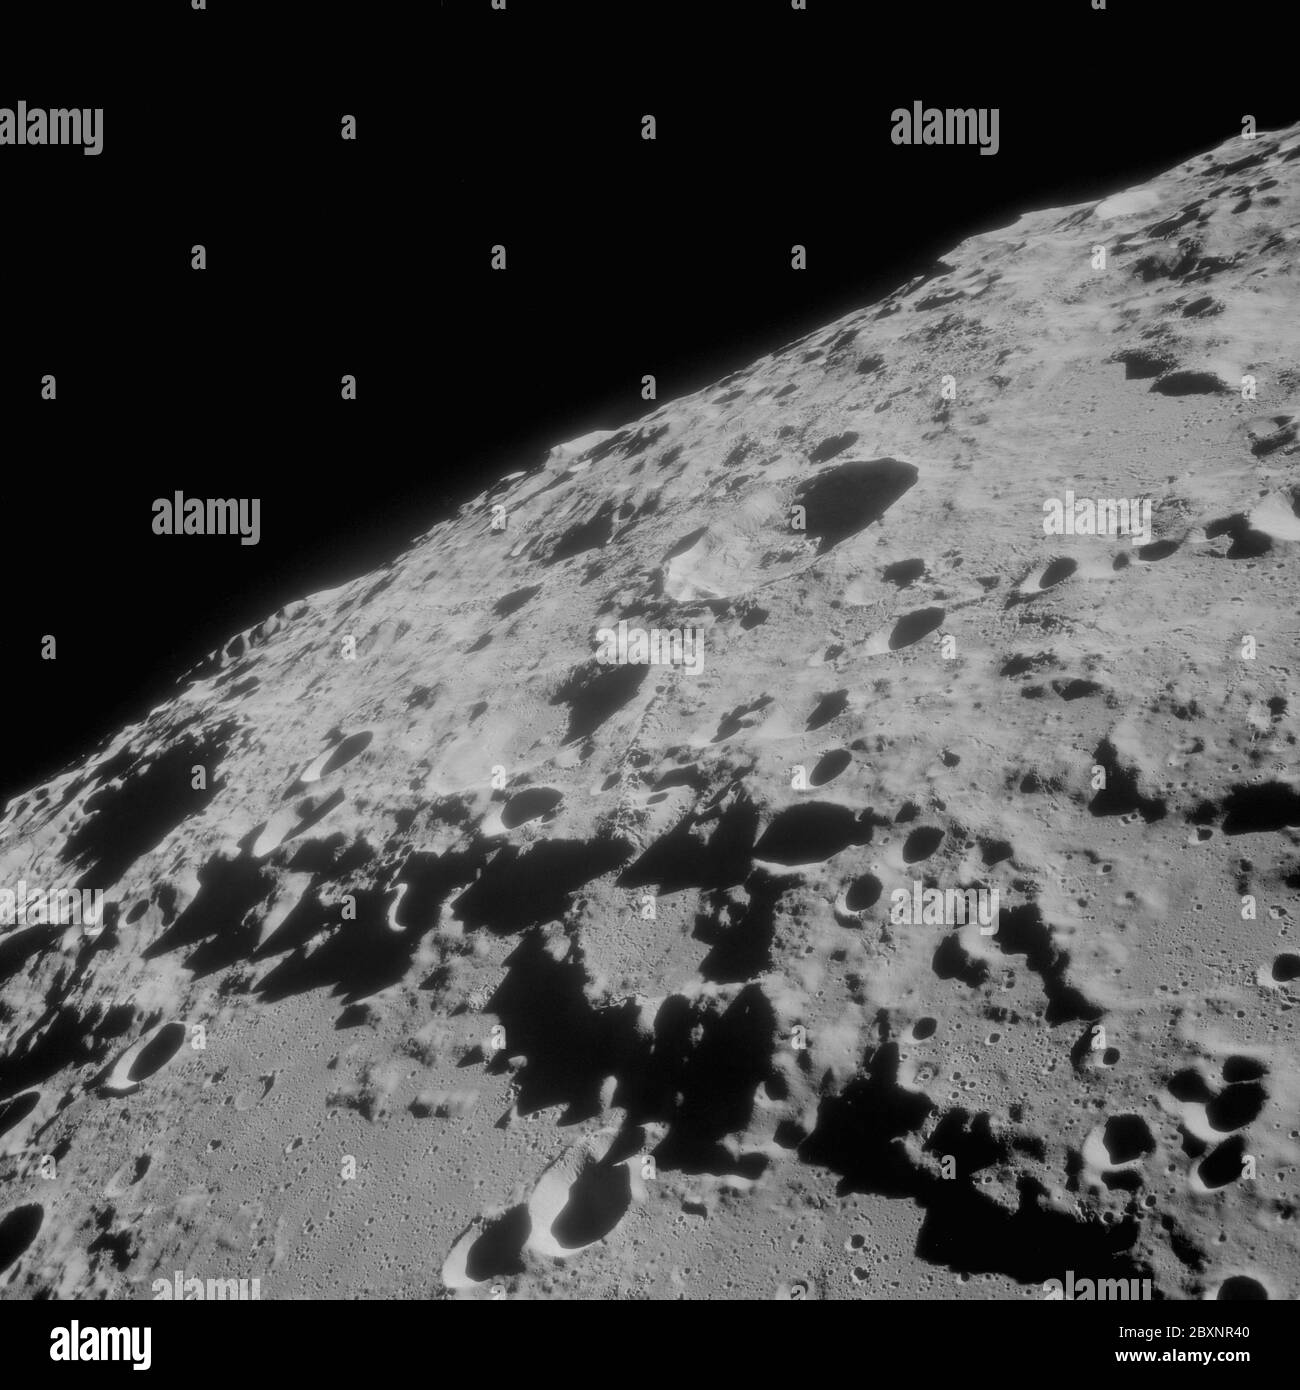 AS11-42-6248 - Apollo 11 - Apollo 11 Mission Image - Crater 312; alcance y  contenido: La base de datos original describe esto como: Descripción: Vista  de la Luna,Crater 312,oficialmente llamado Crookes. Imagen